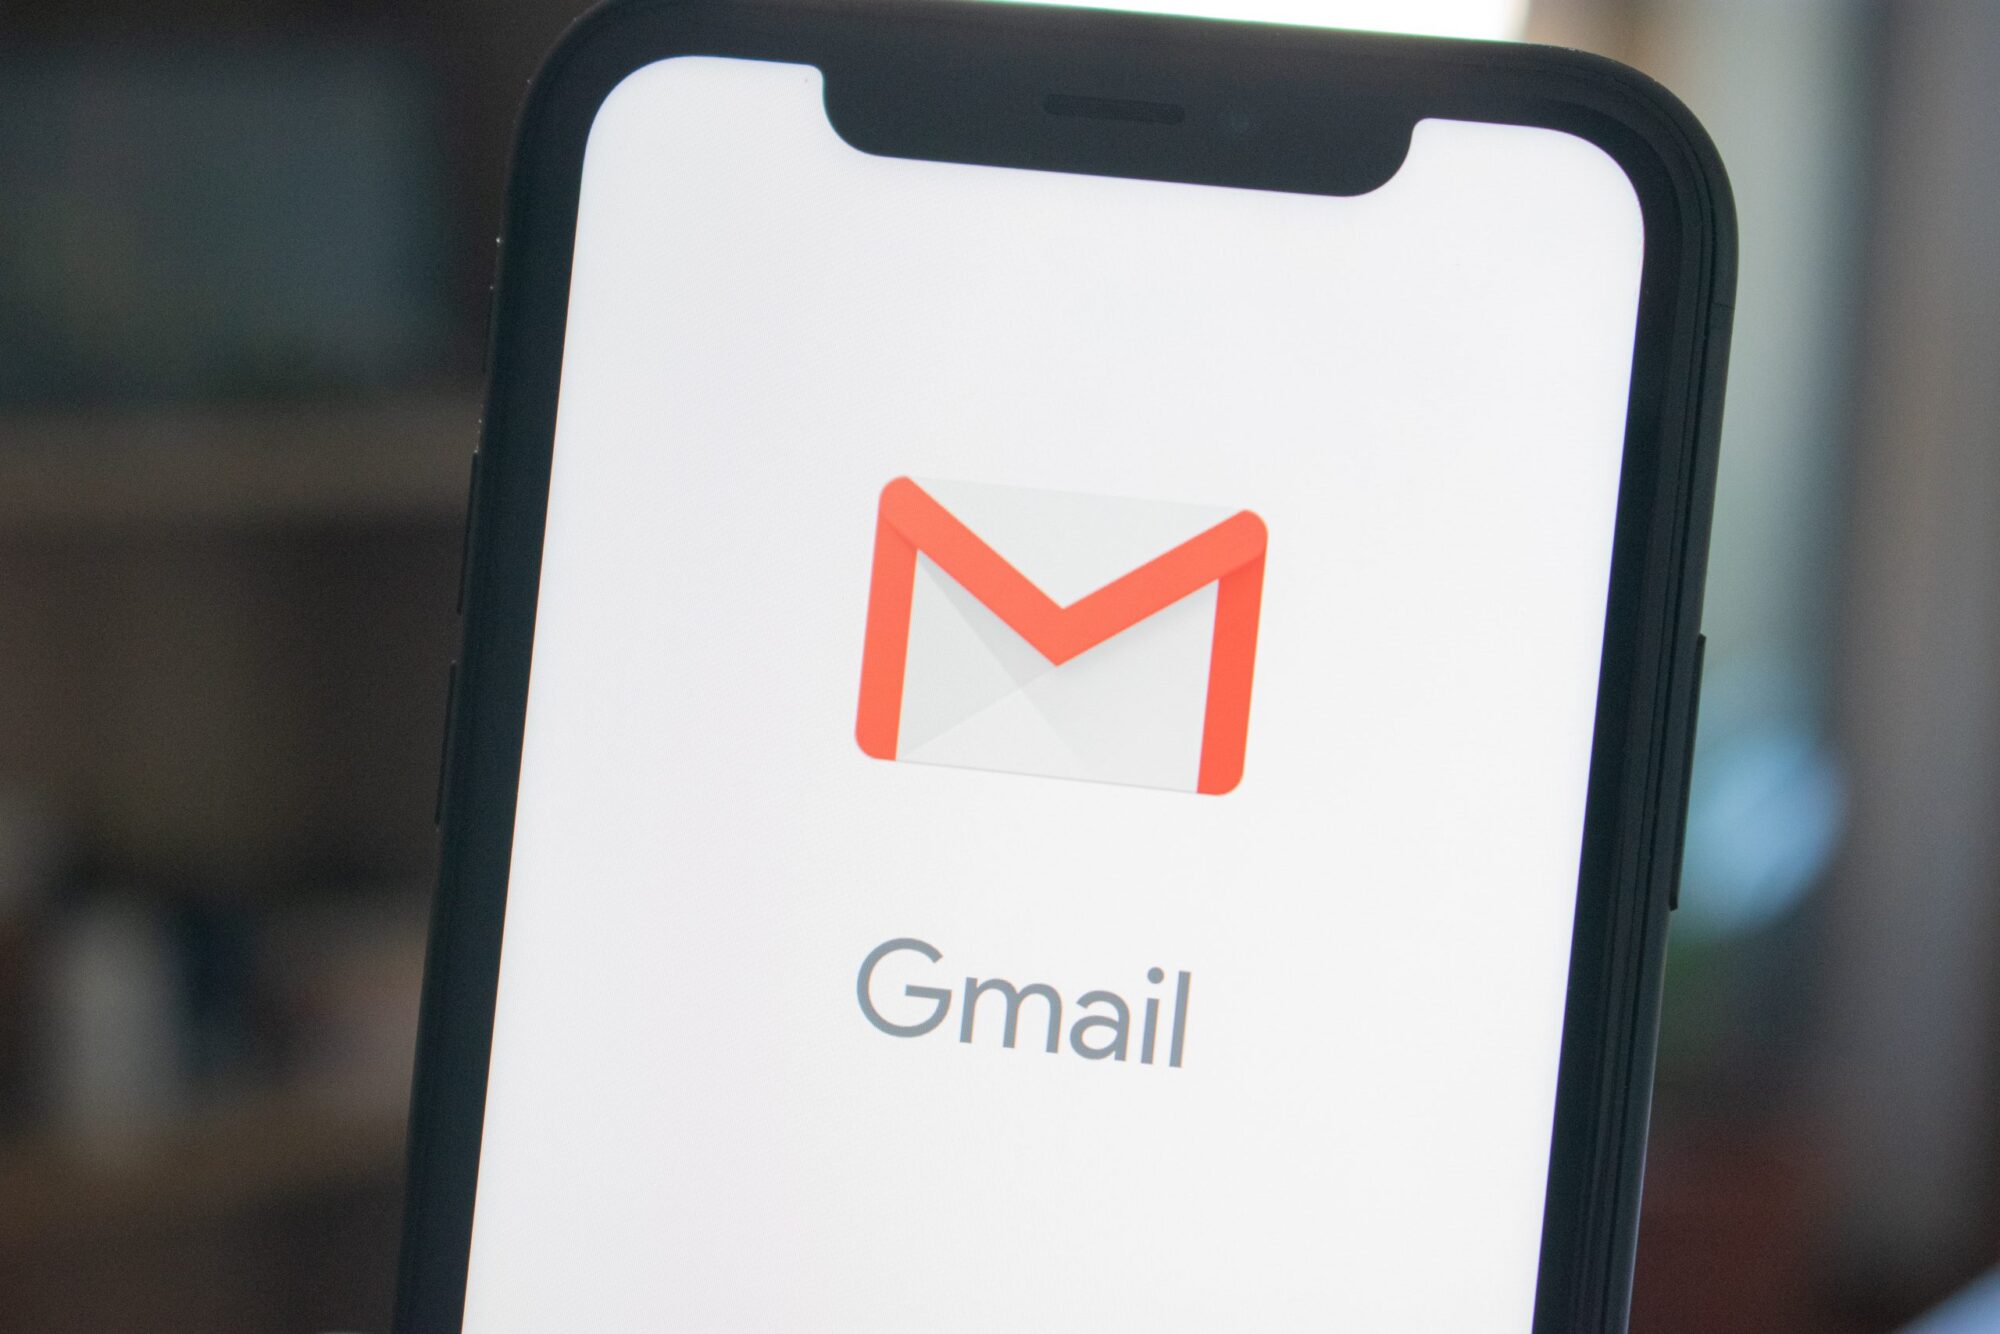 svart telefon med applikationen gmail öppen